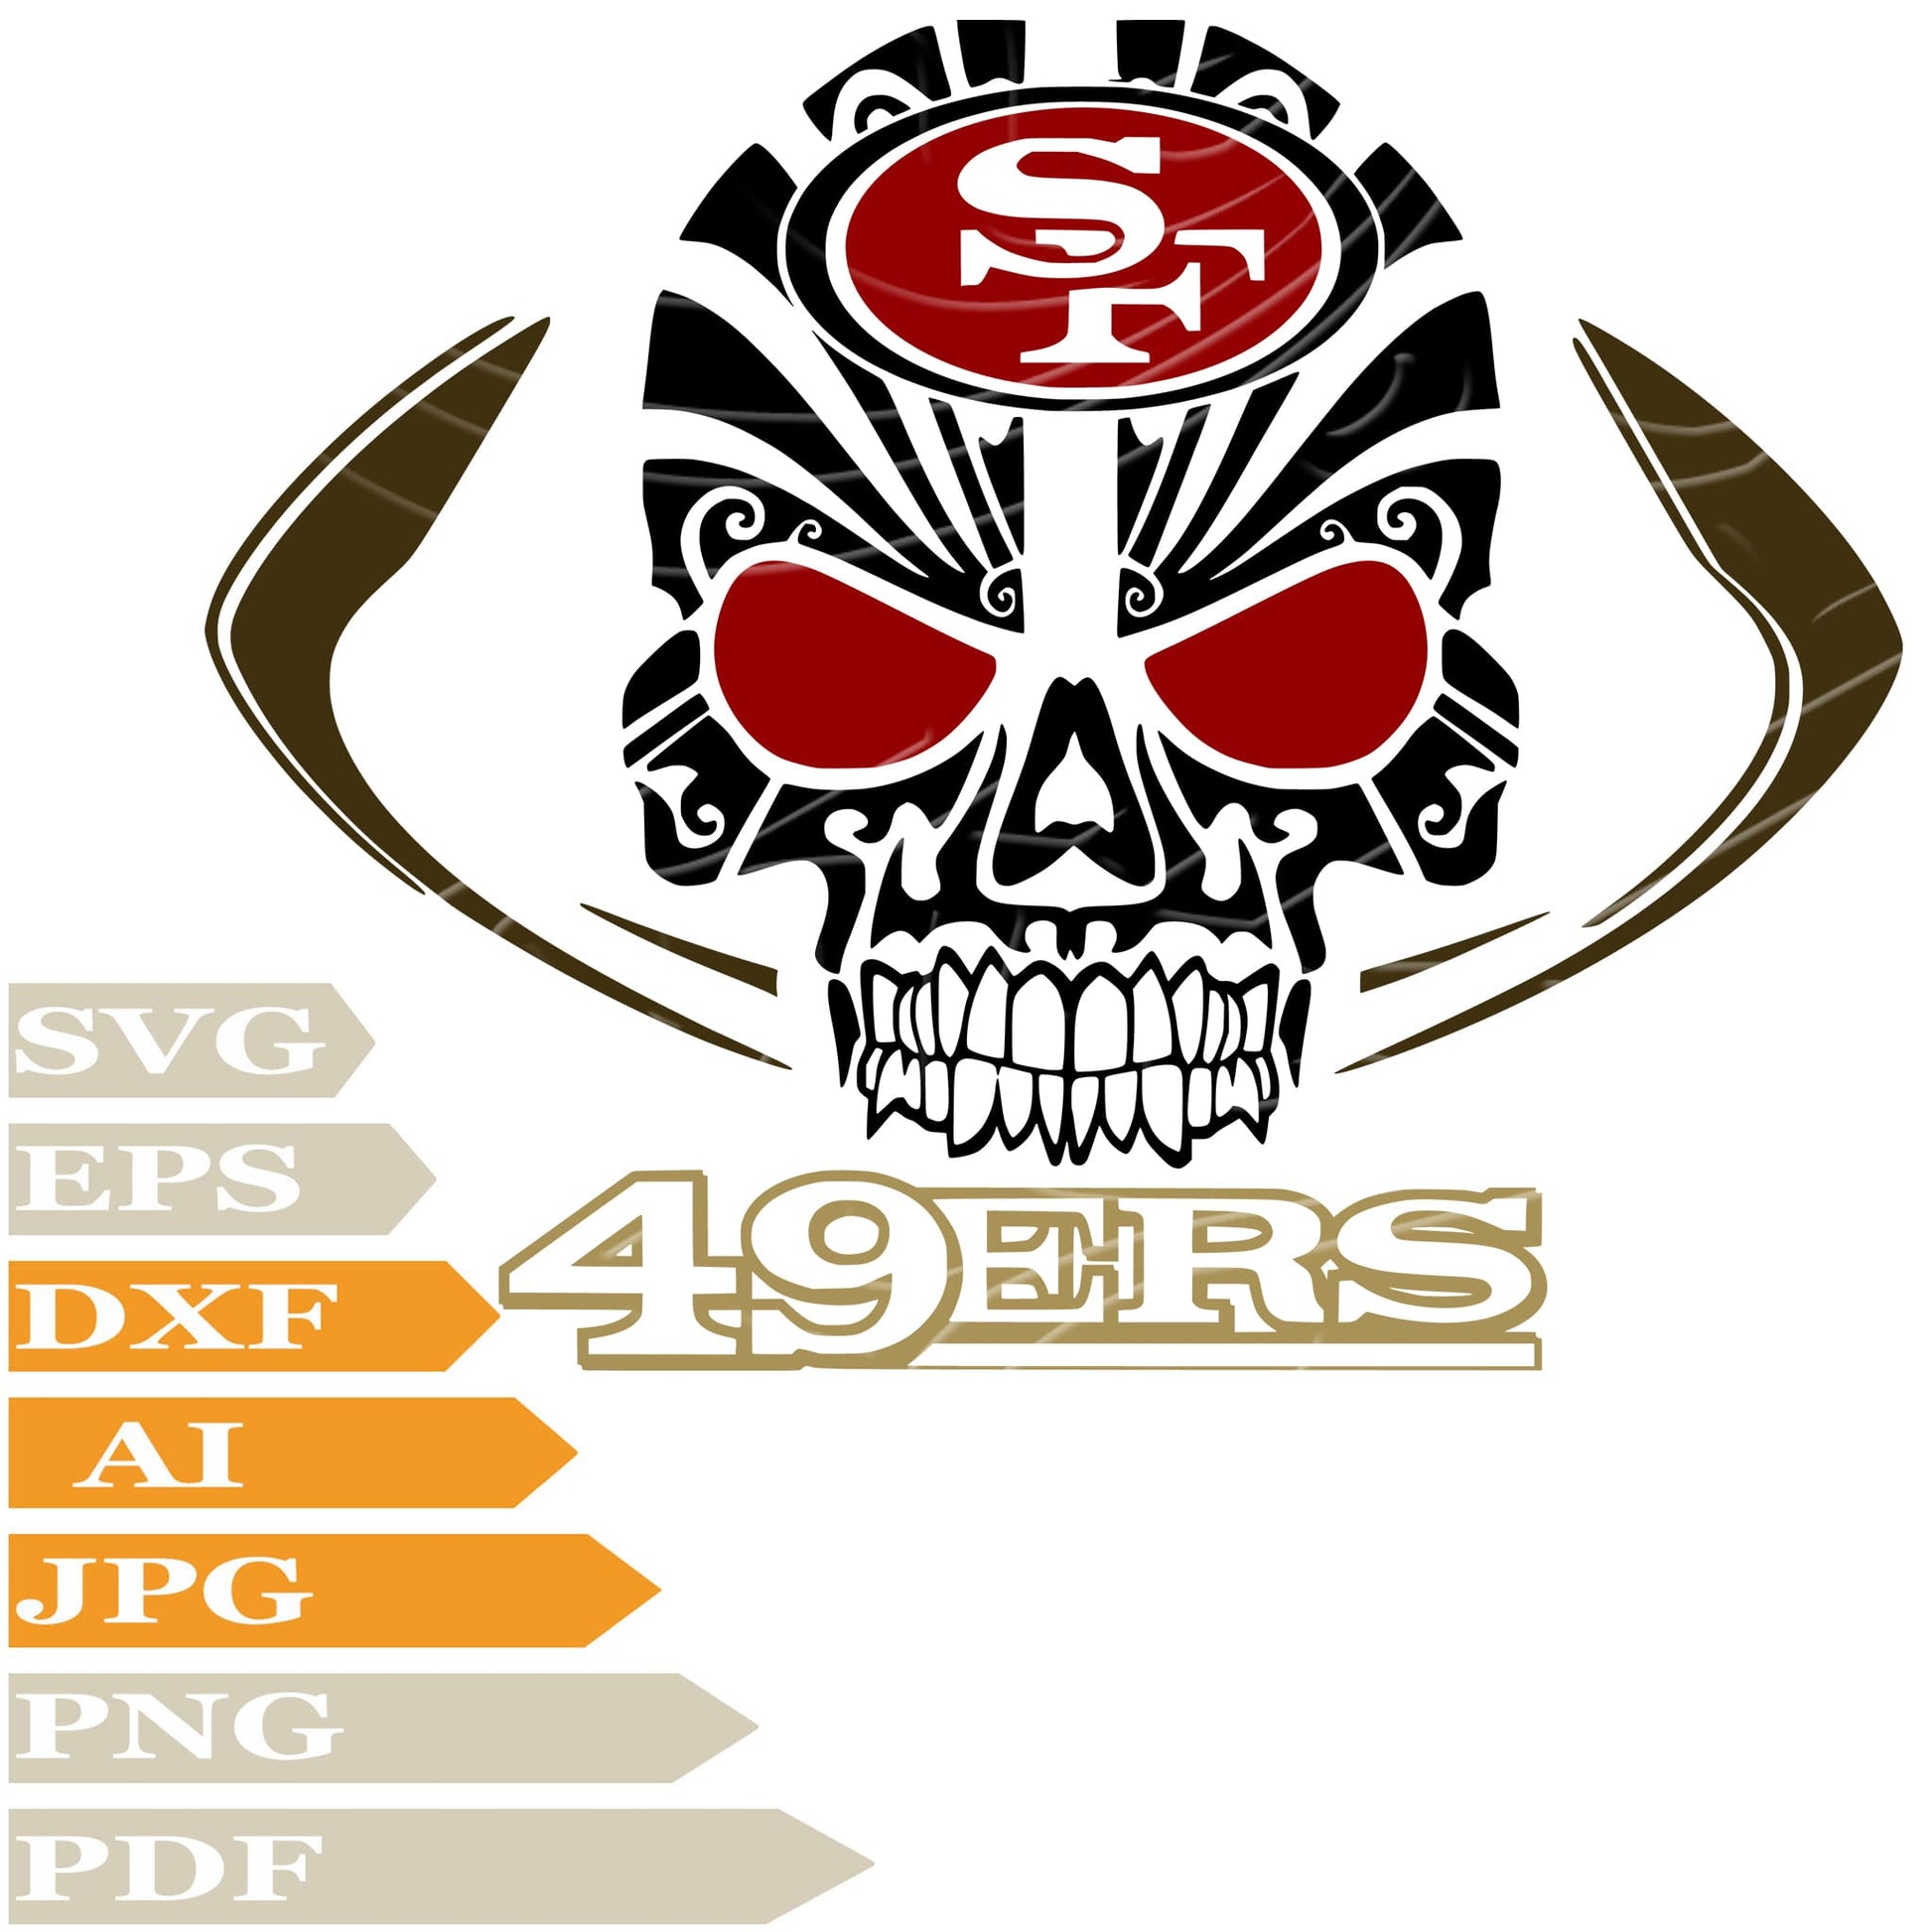 San Francisco 49ers  Logo SVG File, 49ers Logo SVG Design, San Francisco 49ers Vector Graphics, San Francisco 49ers Logo PNG, Image Cut, Cricut, Clipart, Instant Download, Clip Art, Silhouette